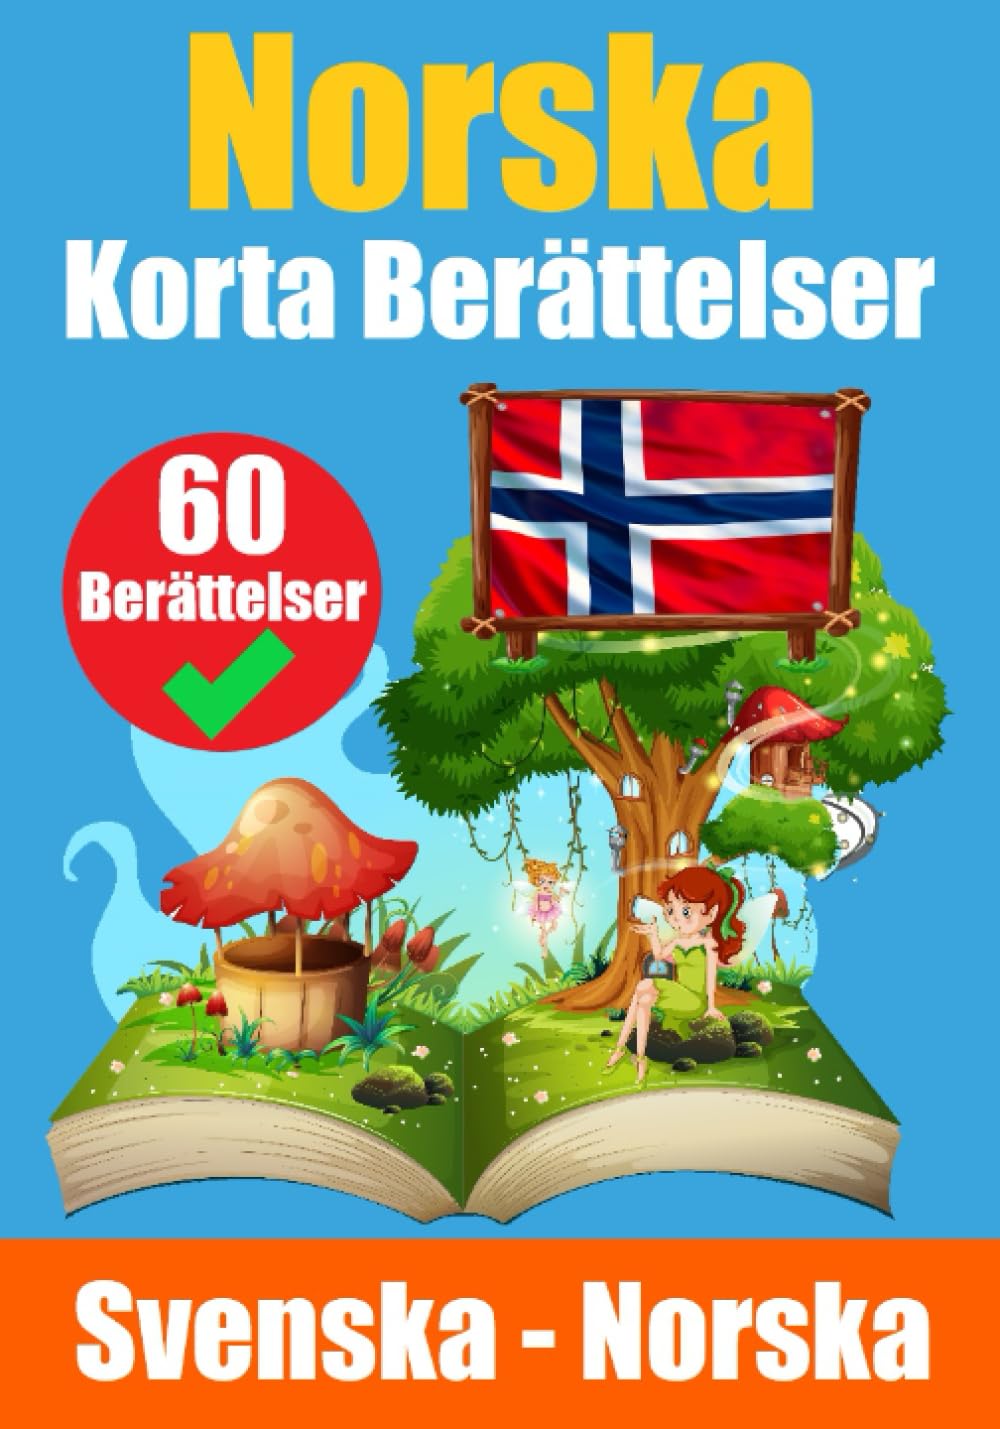 Korta Berättelser på Norska - Skriuwer.com